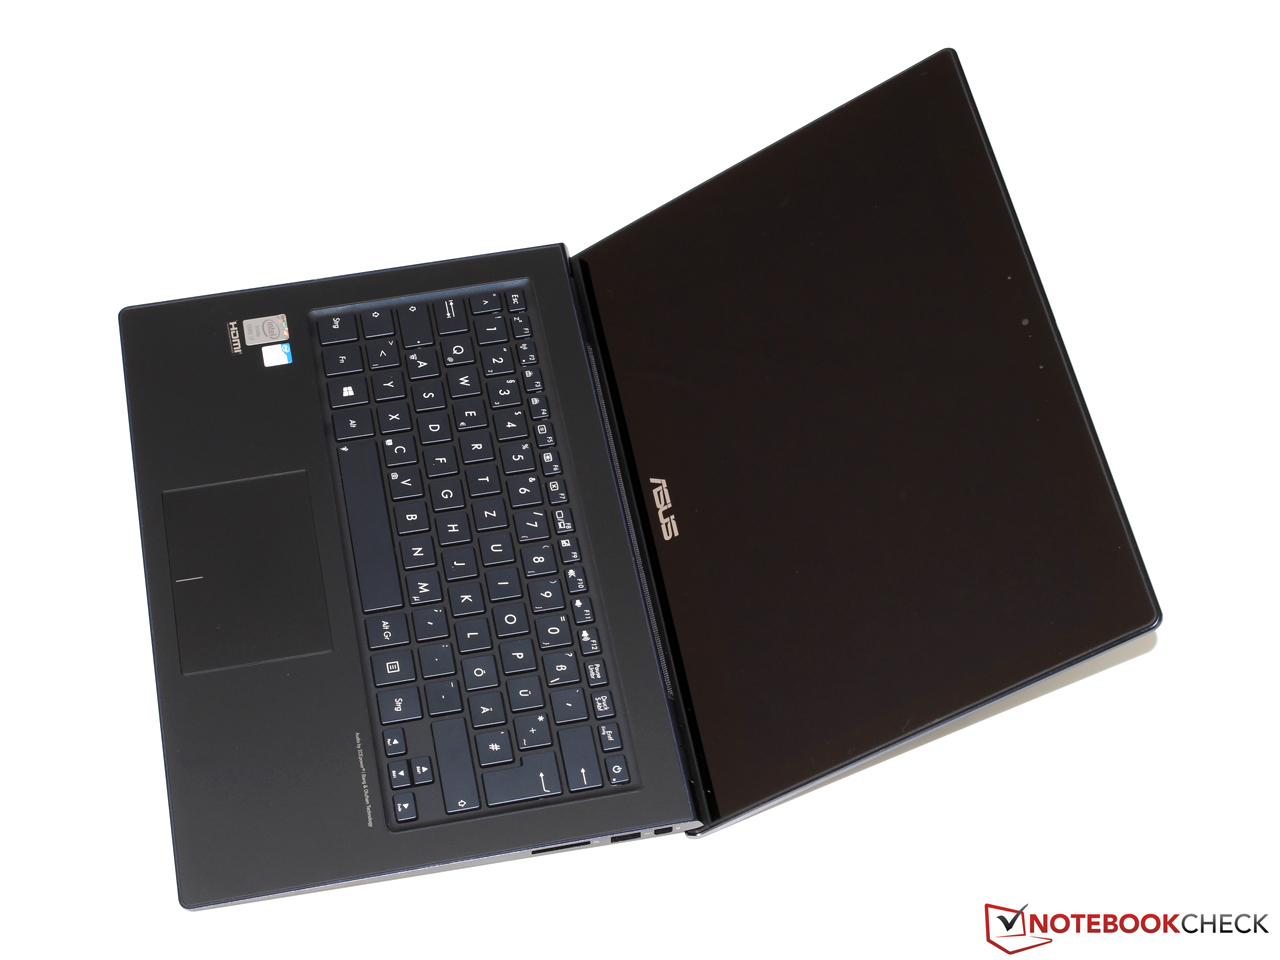 asus 13.3 zenbook ux301la multi touch ultrabook review